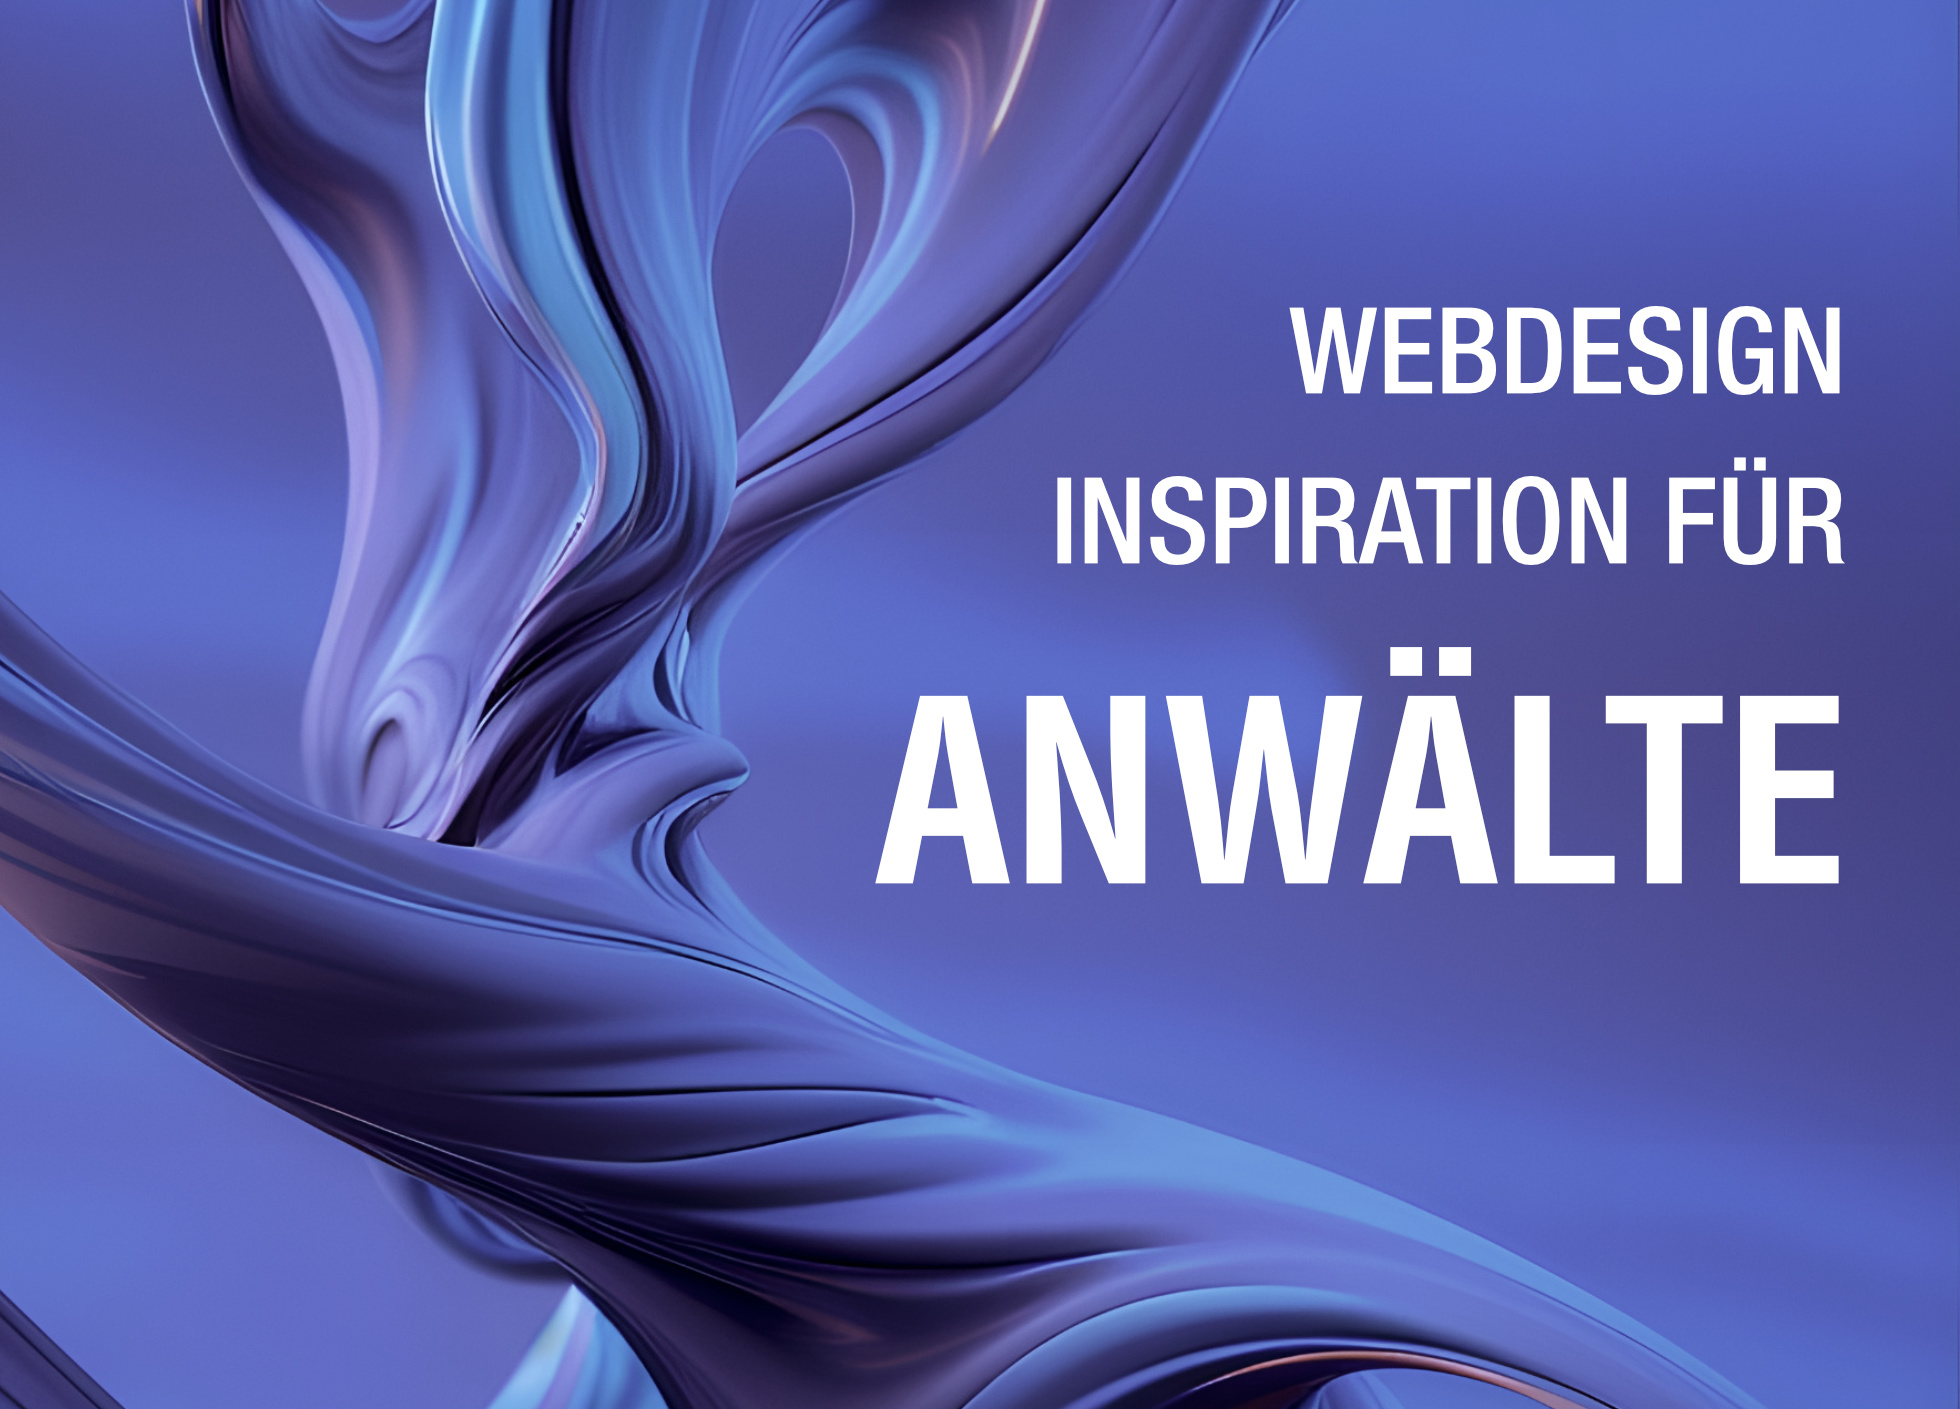 Webdesign Anwälte Inspiration - Abstraktes Startbild zum Blogartikel